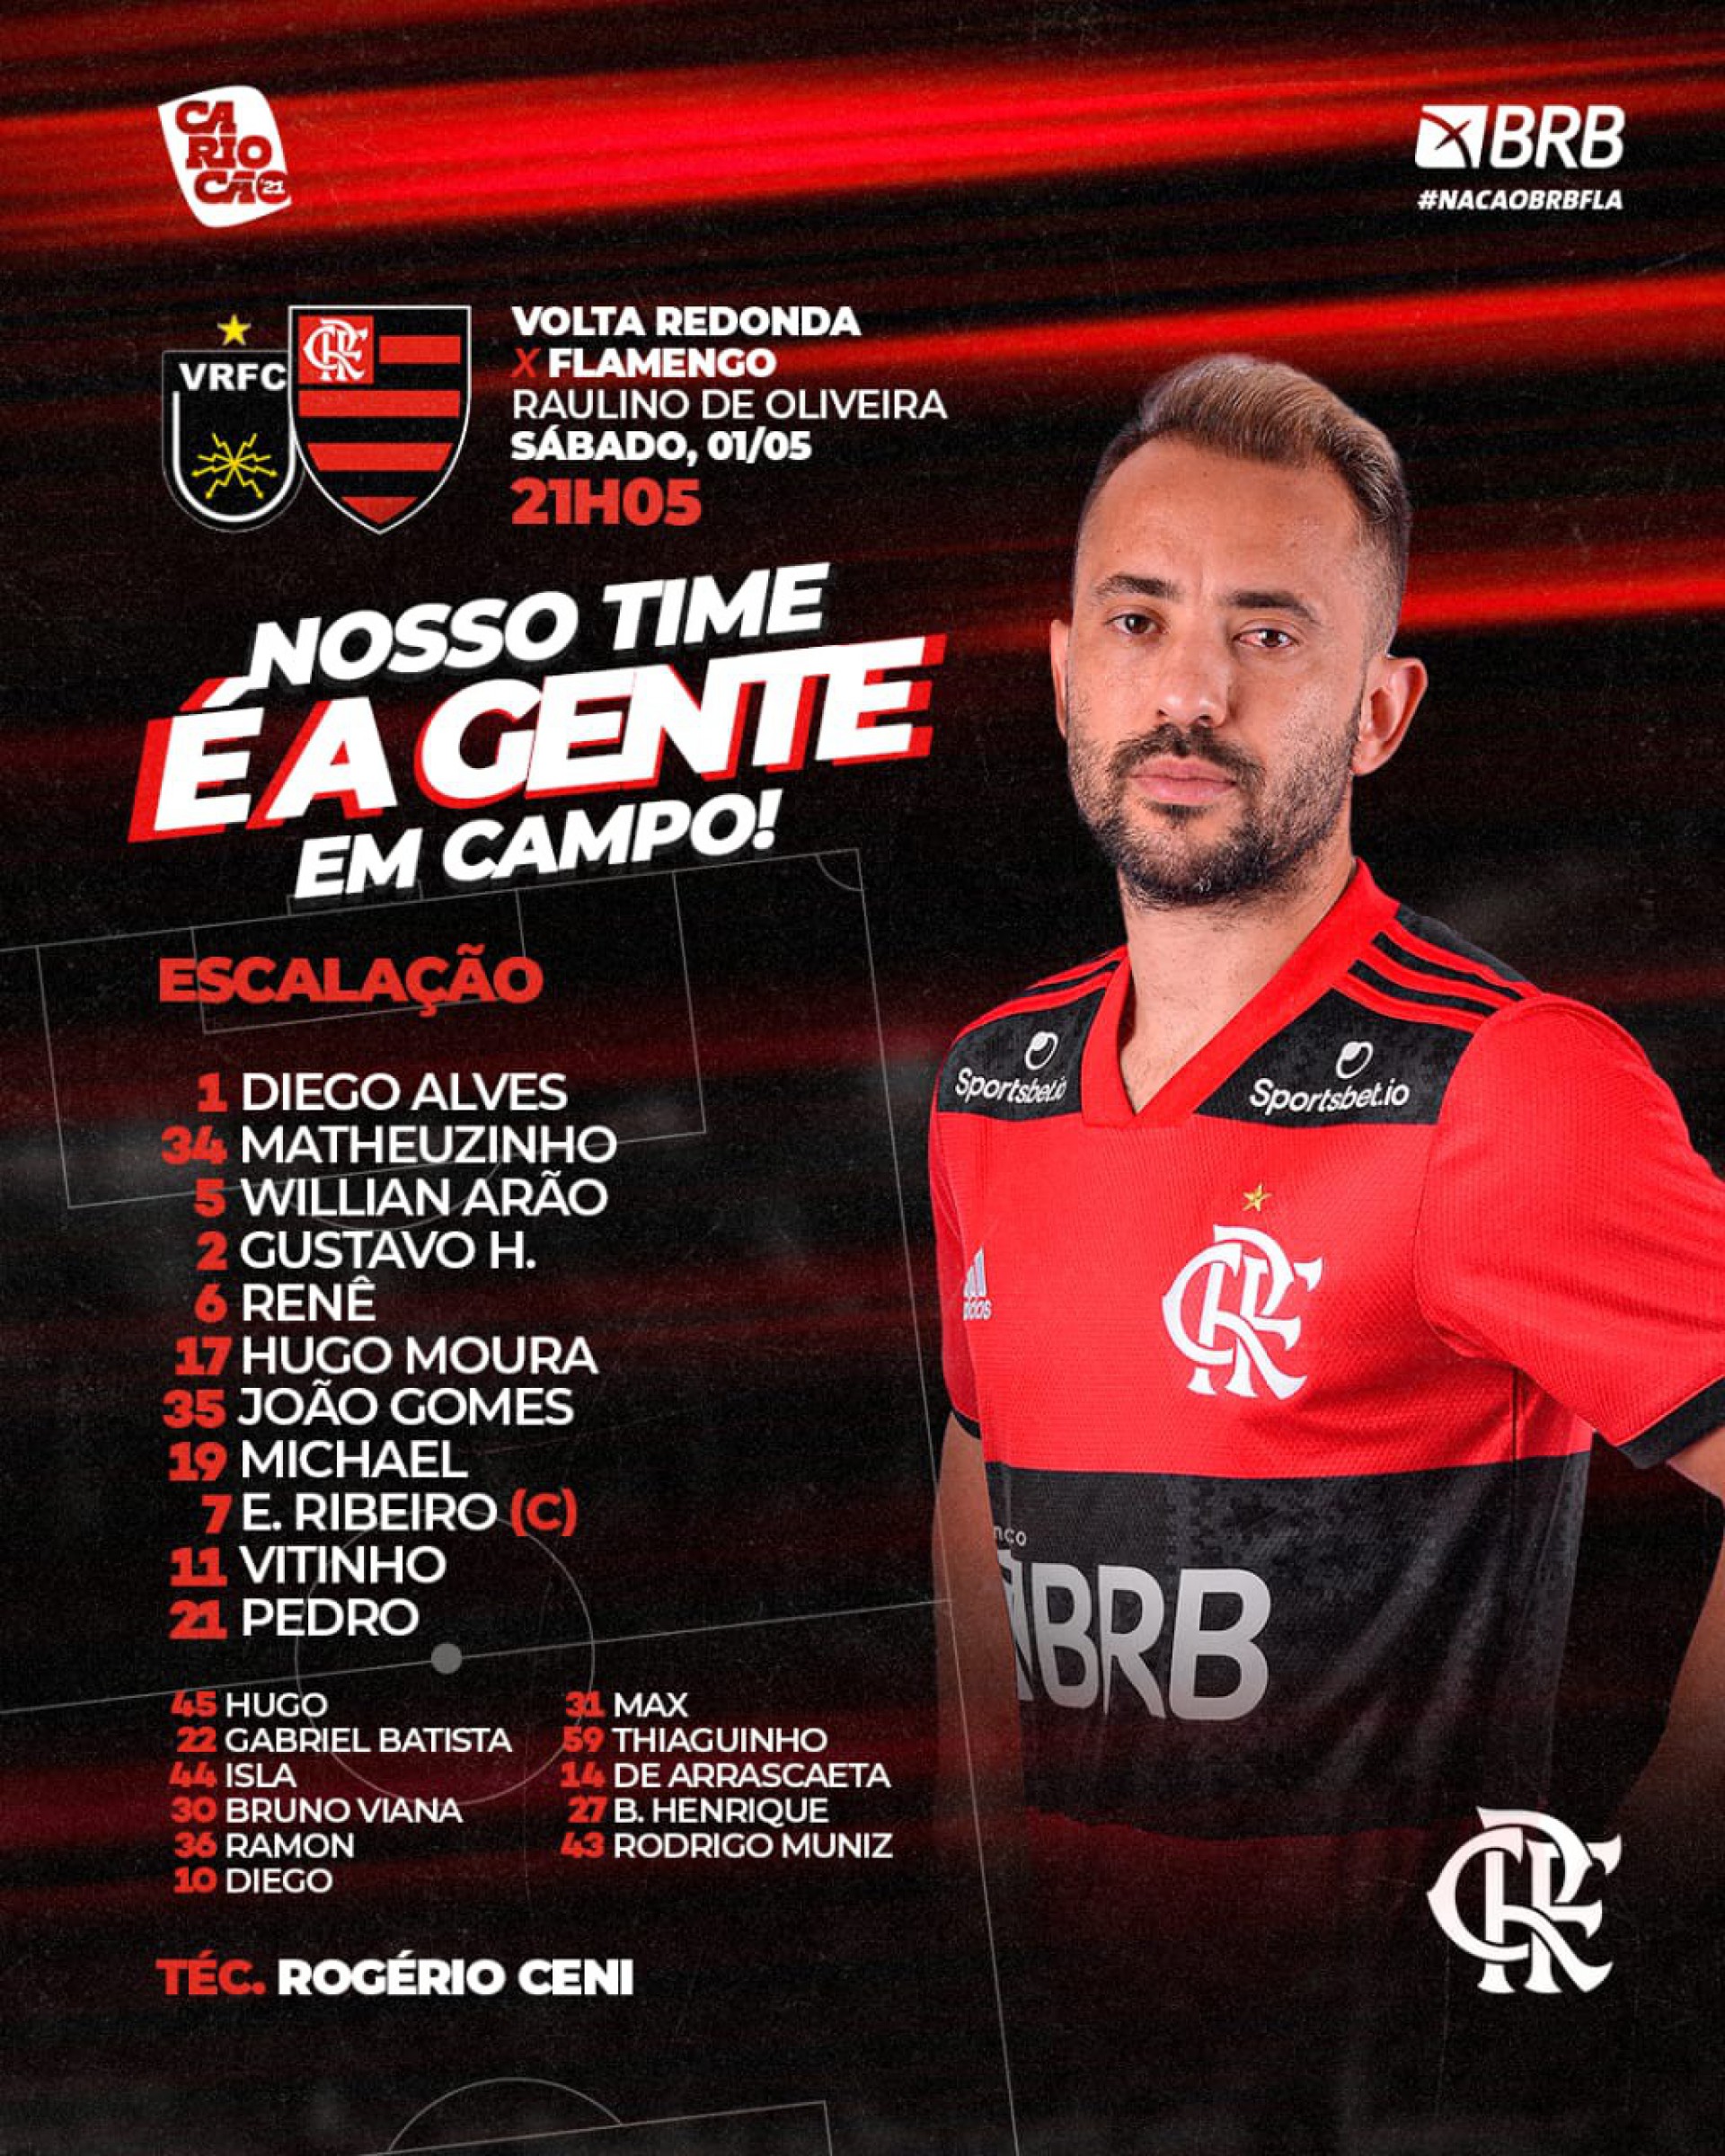 Escalação e banco do Flamengo contra o Volta Redonda, pela semifinal do Carioca - Divulgação/Flamengo